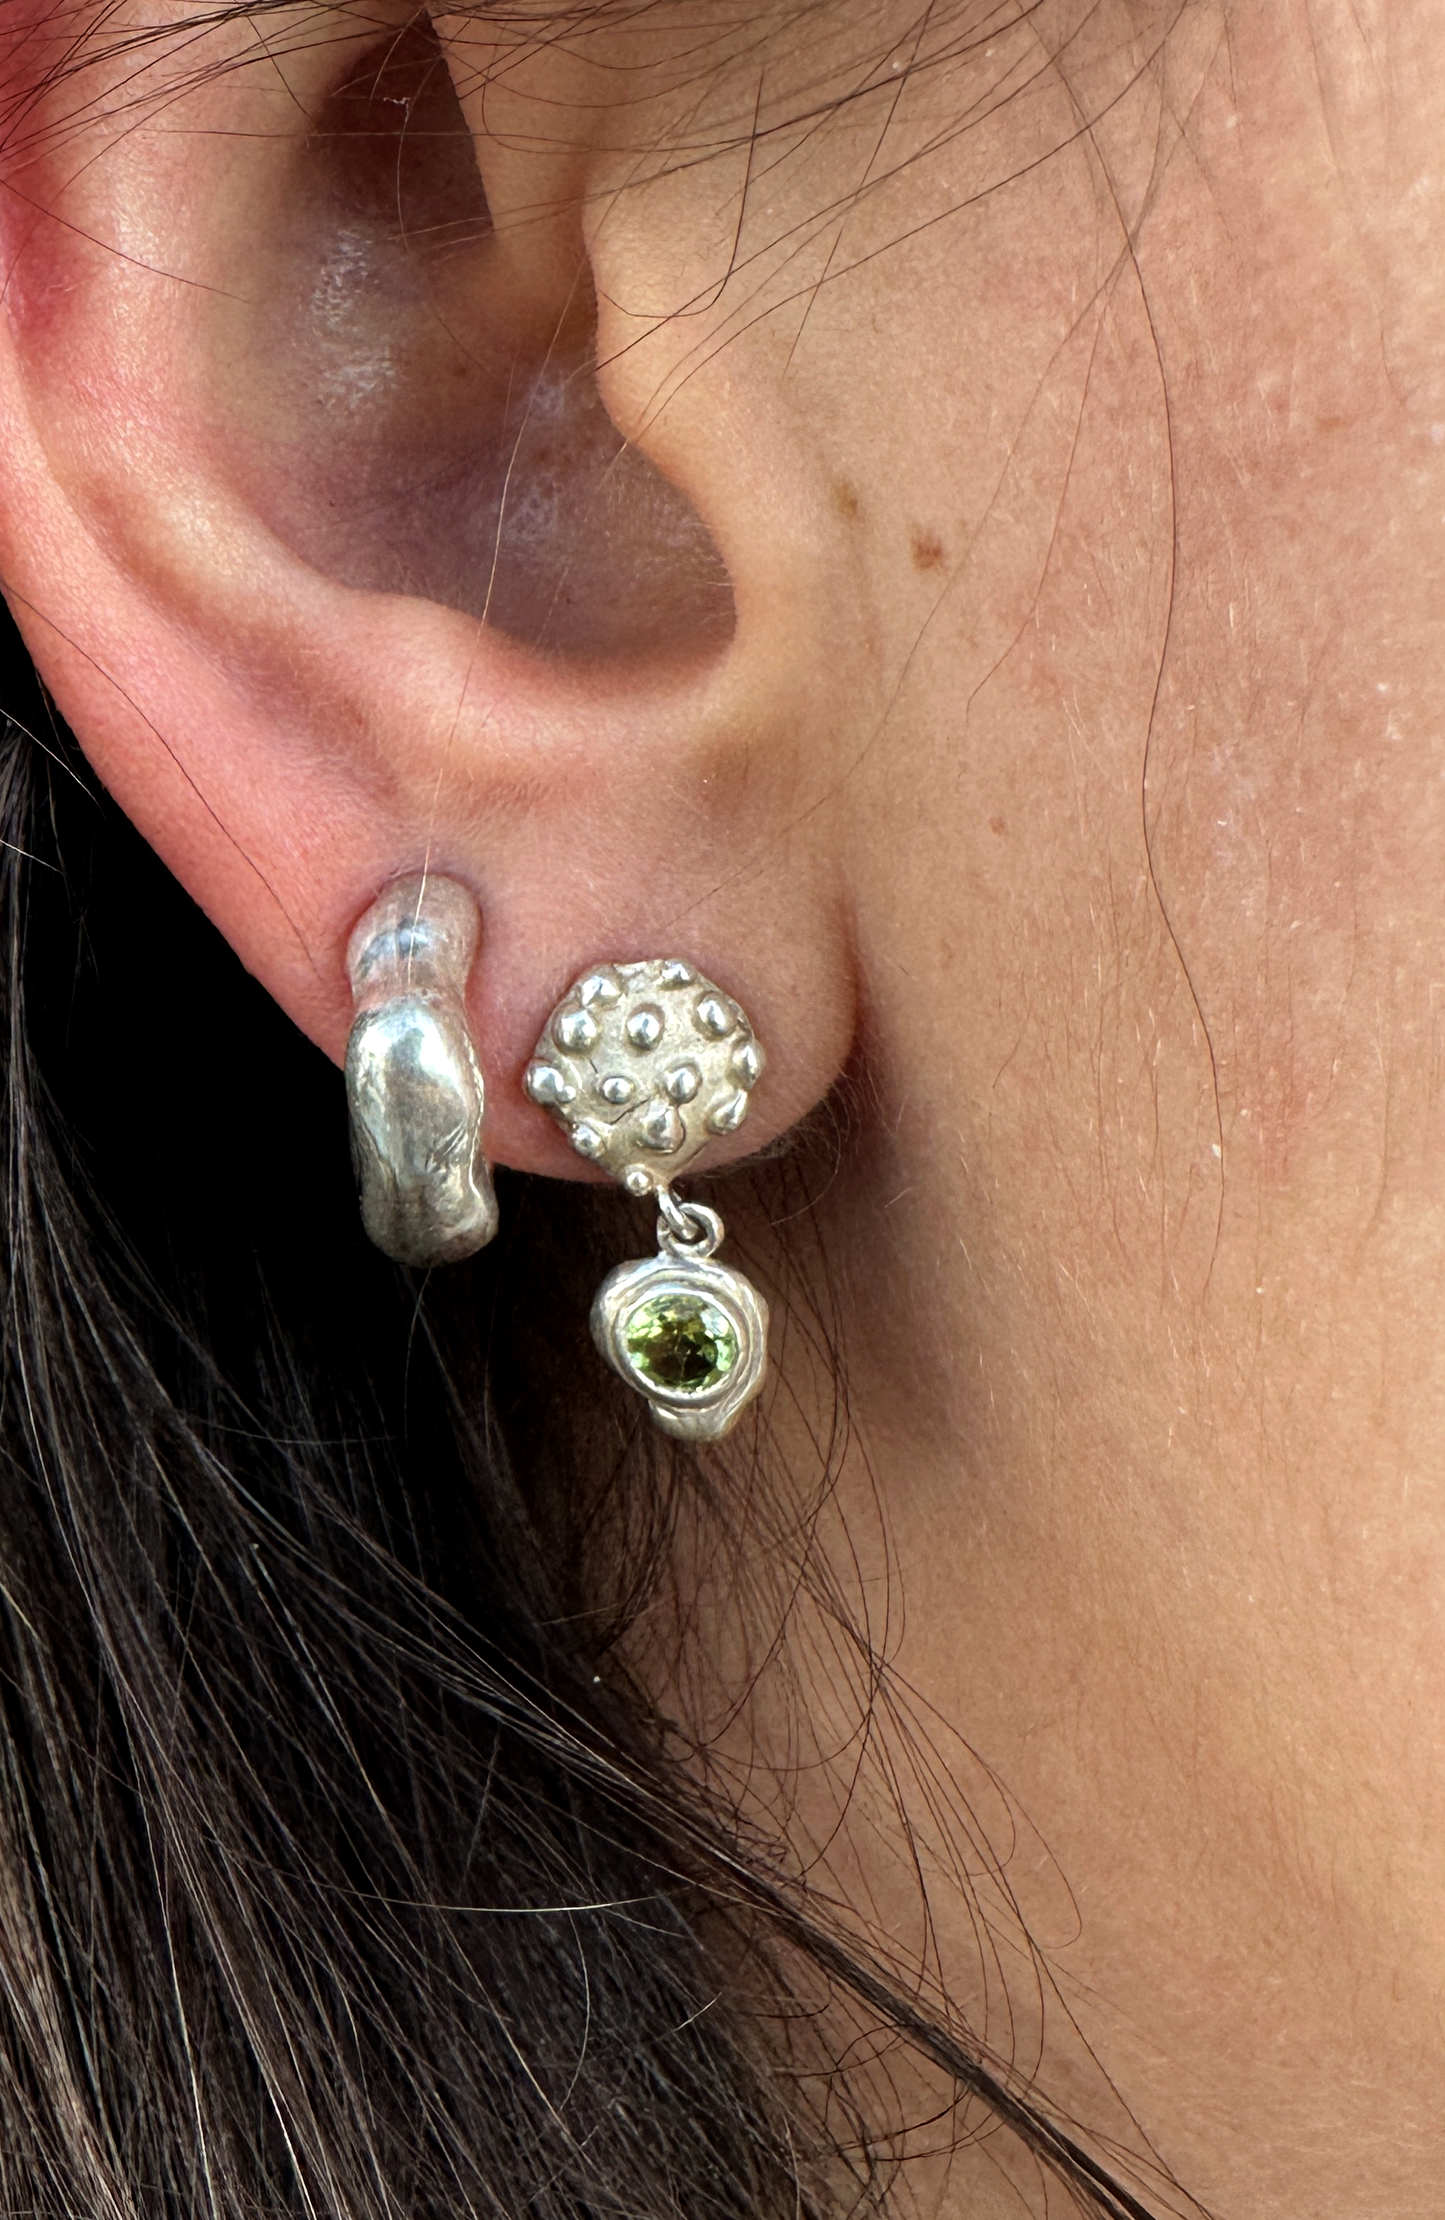 Speckle Peridot Earring Set